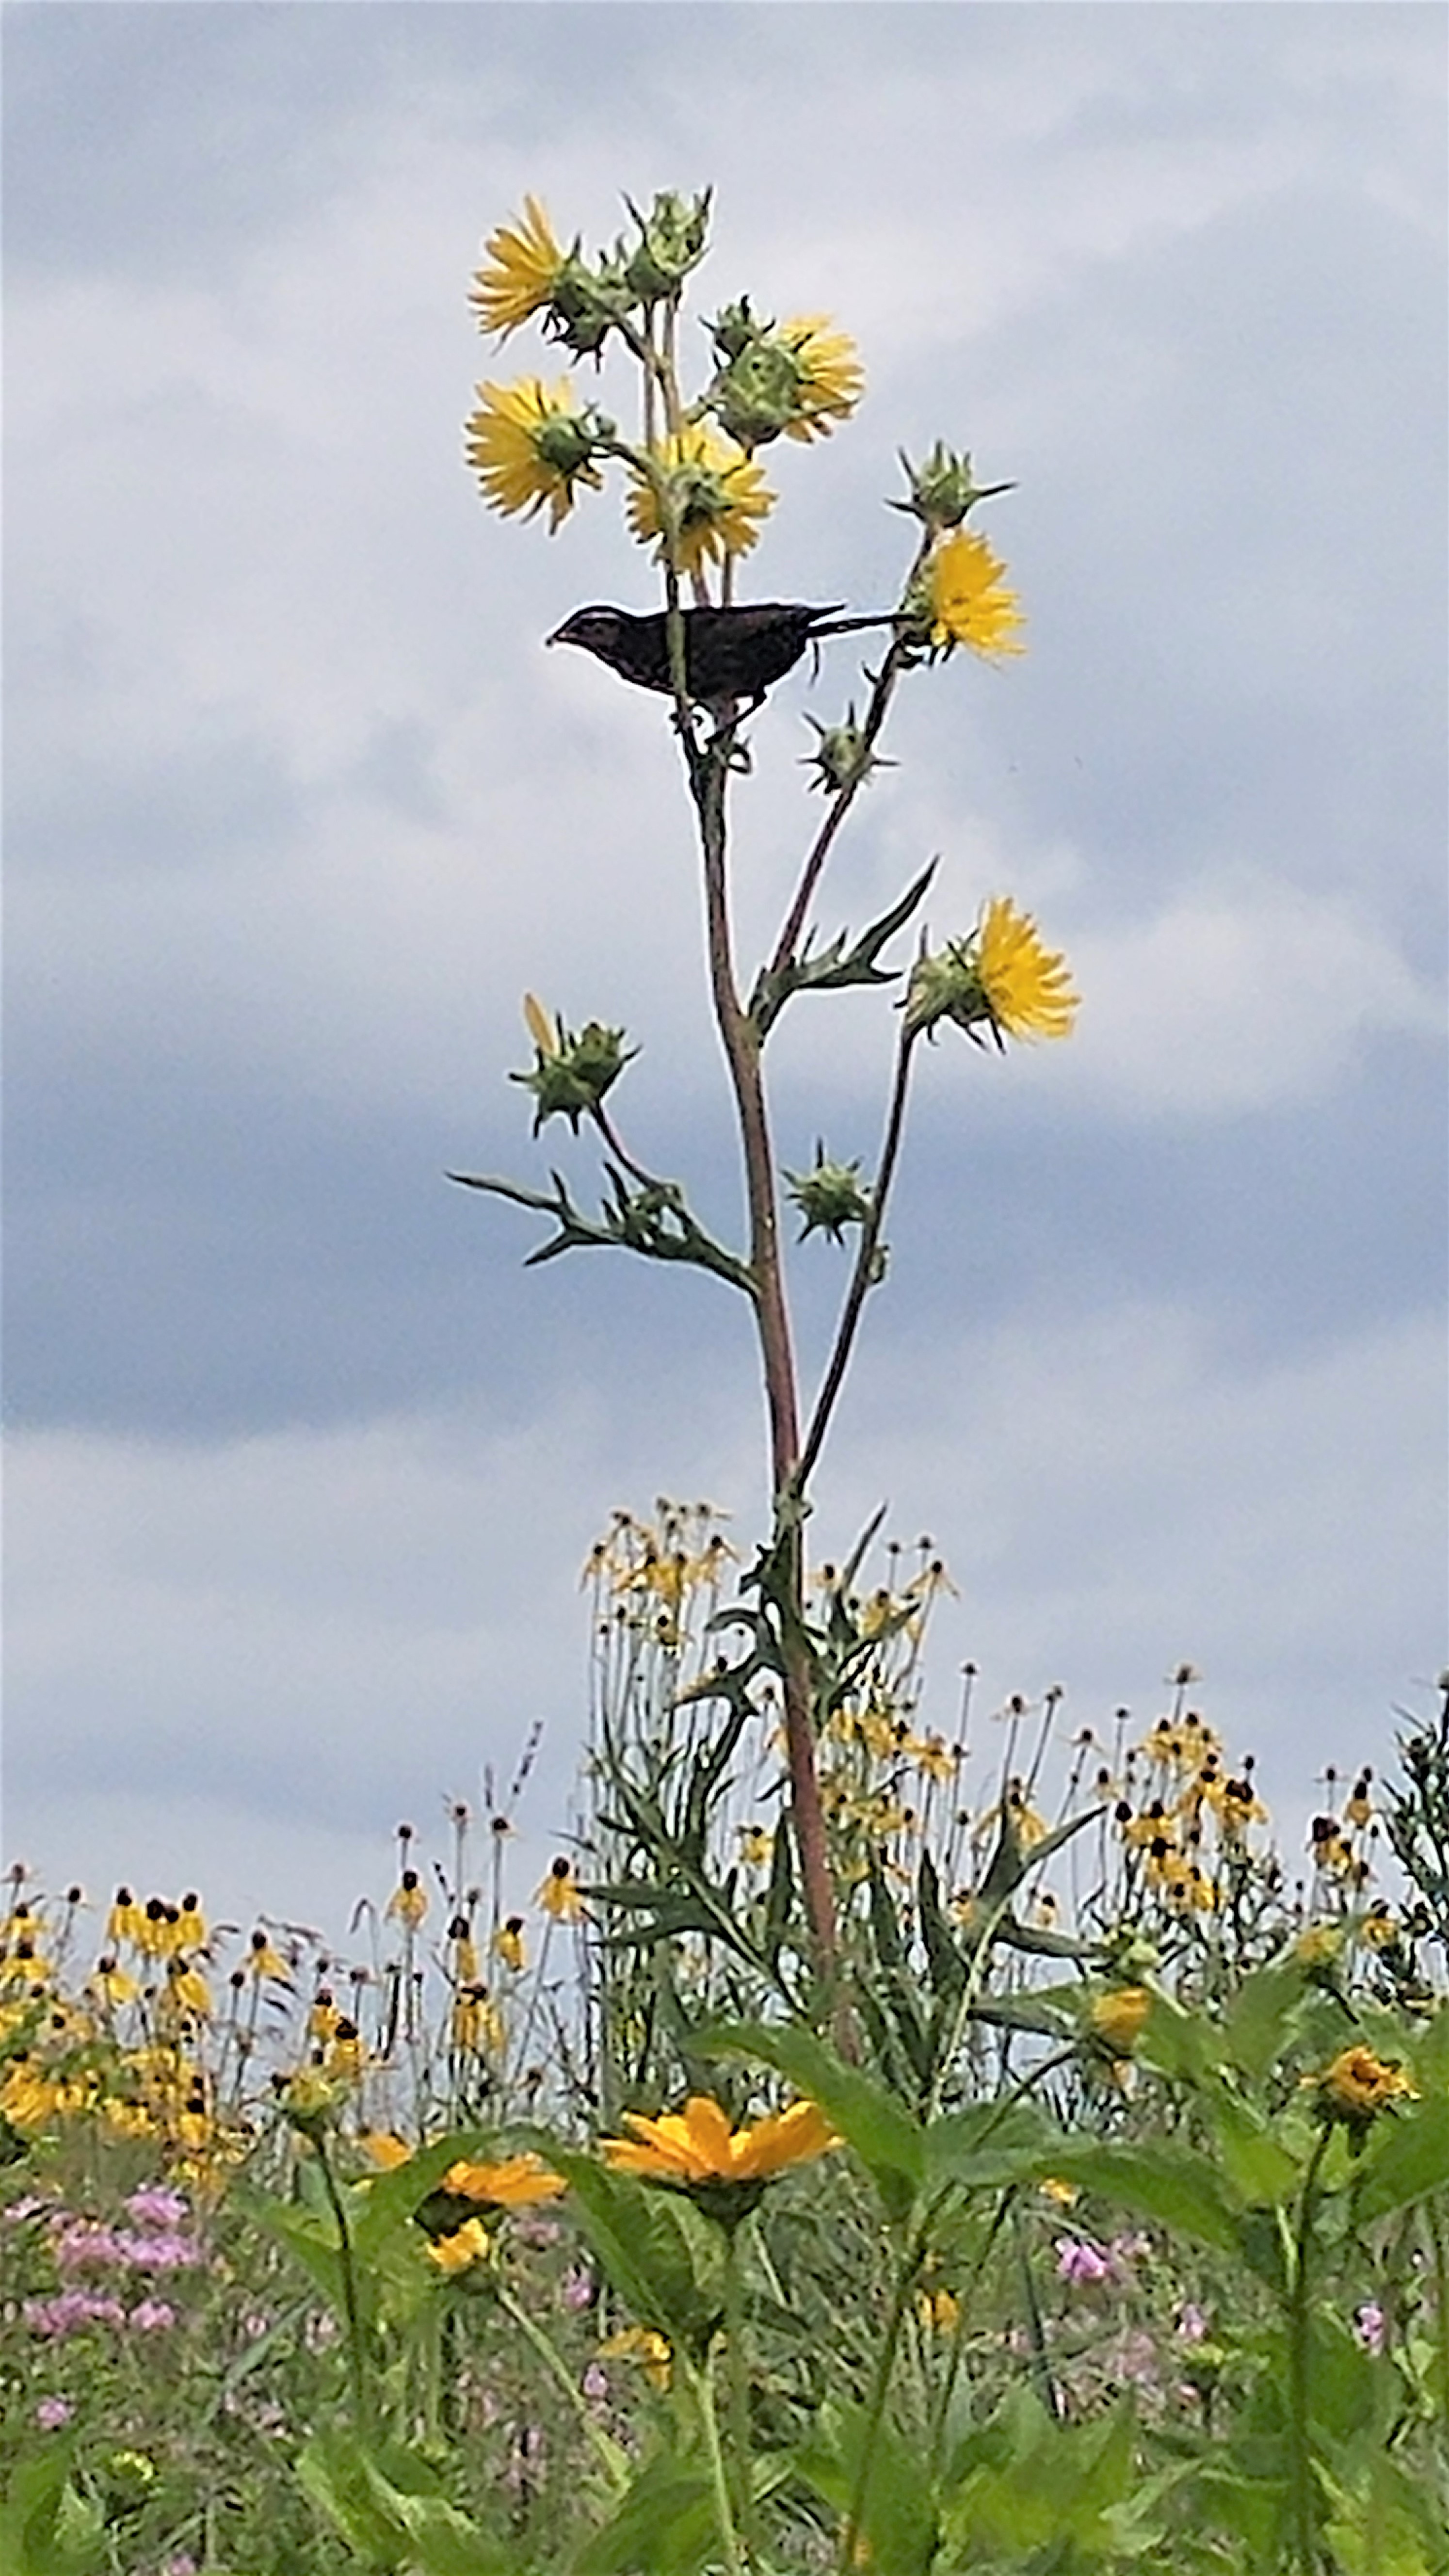 Black bird sitting on flower